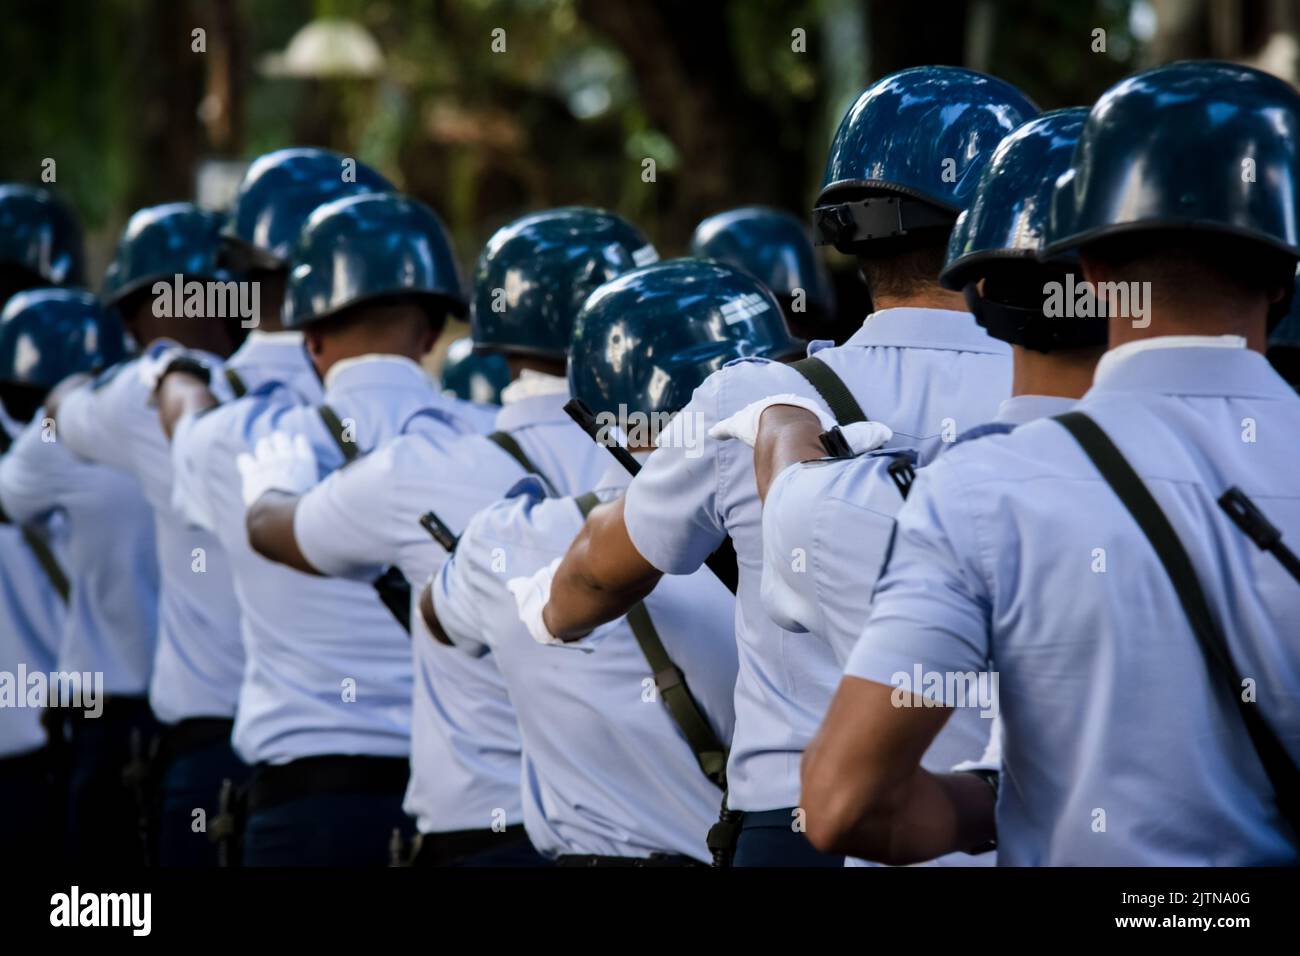 Salvador, Bahia, Brasilien - 7. September 2016: Soldaten der brasilianischen Luftfahrt während einer Militärparade zur Erinnerung an die Unabhängigkeit Brasiliens in Th Stockfoto